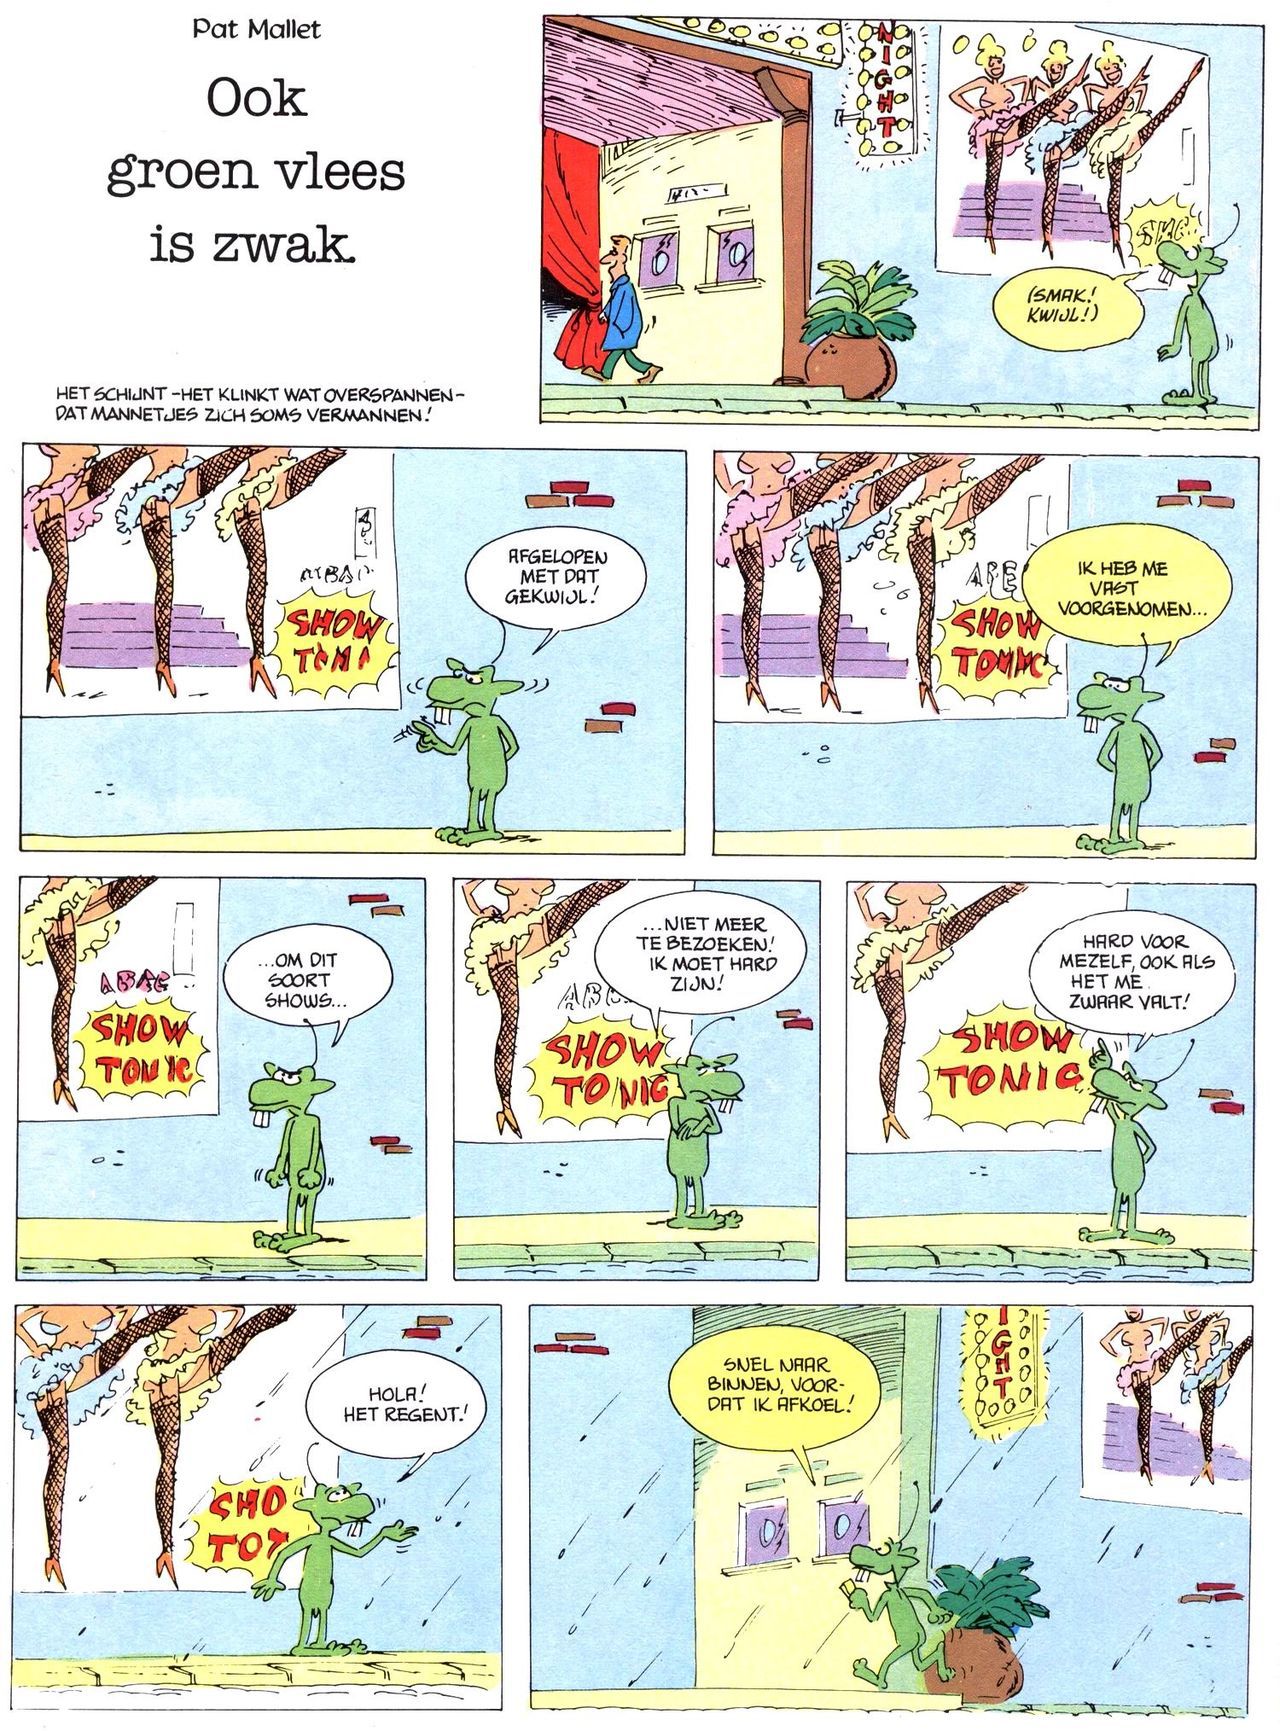 Het Is Groen En Het.. - 02 - Verboden Op Het Gras Te Lopen (Dutch) Een oude humoristische serie van Pat Mallet 26